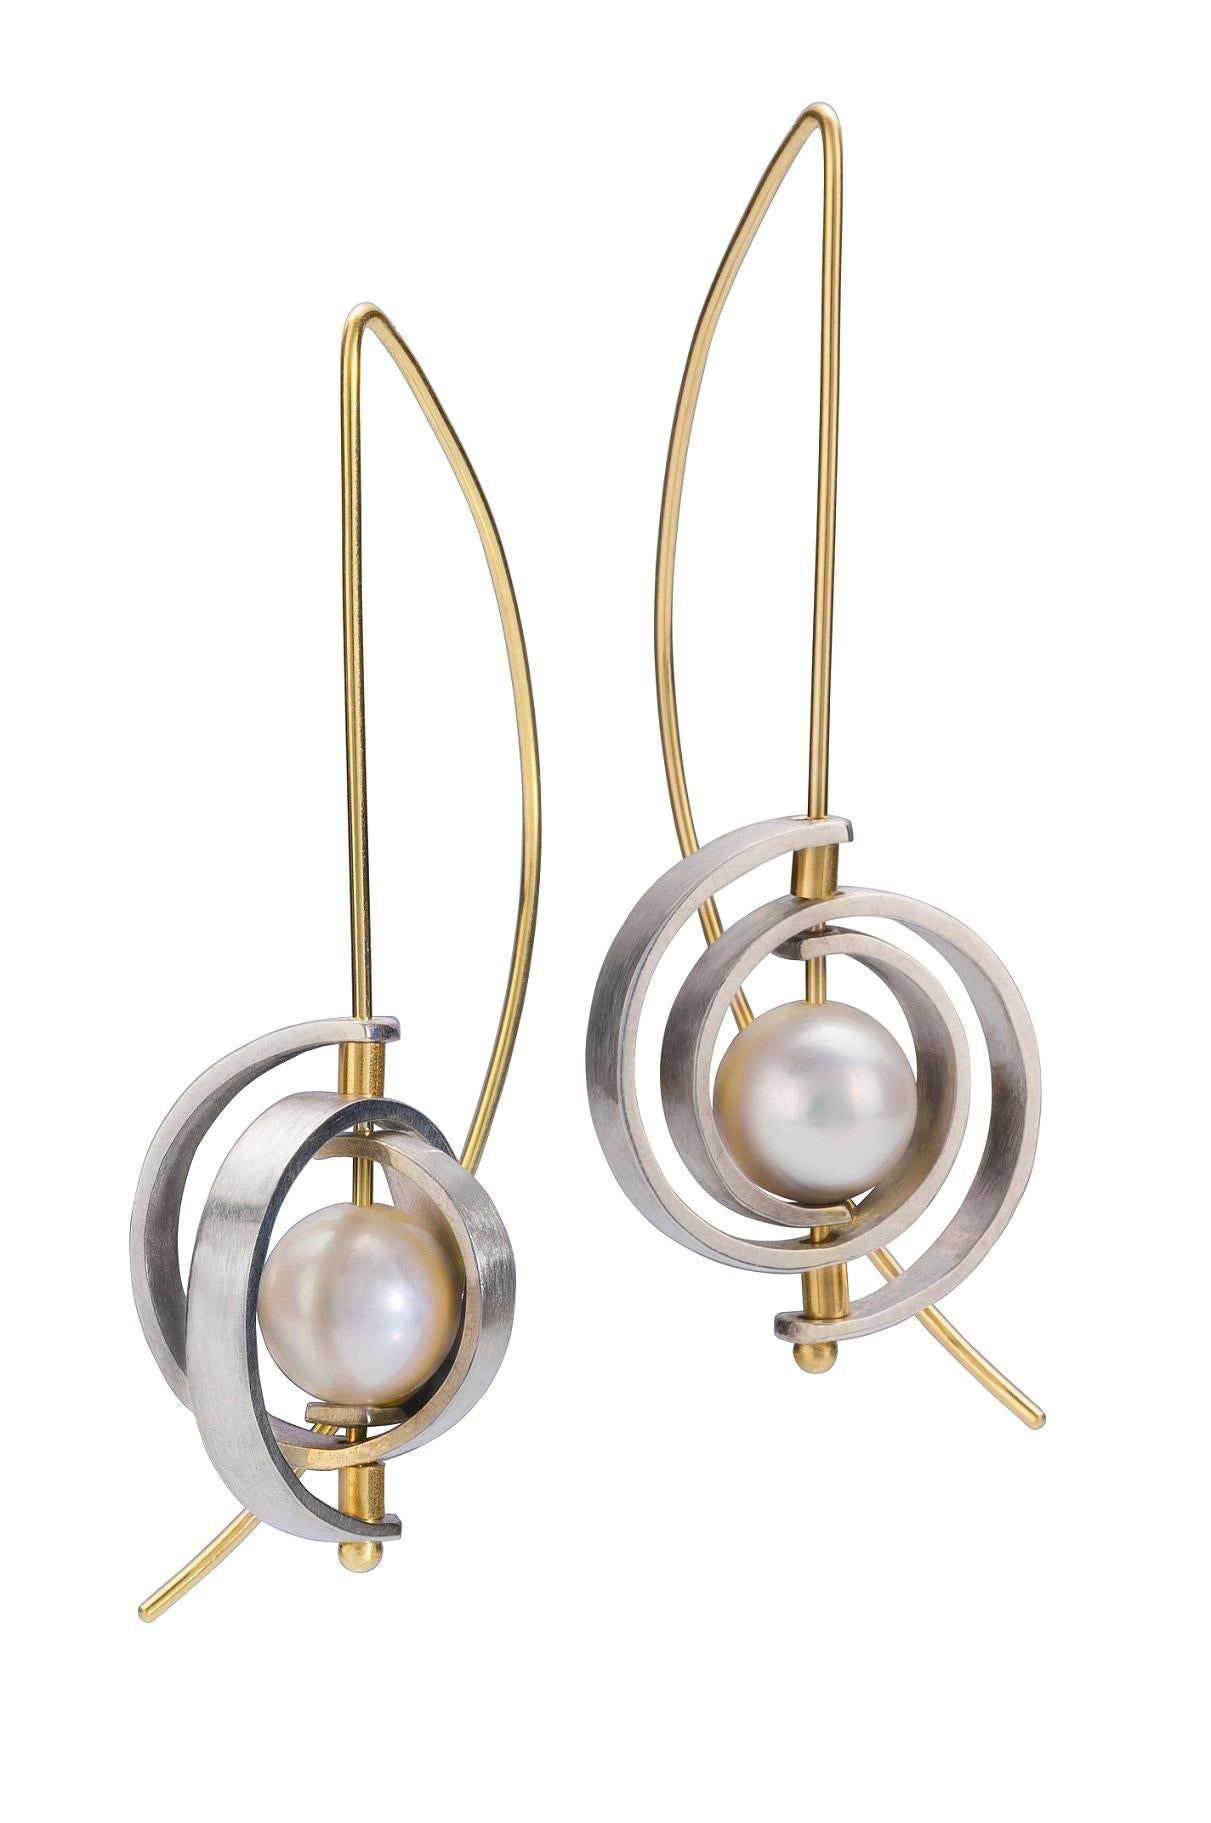 Diese Perlenohrringe sind ein moderner Klassiker. Es handelt sich um Medium Spiral Dangle Earrings aus der Collection'S Orbit mit Spiralen aus Sterlingsilber, einem 20-Gauge-Ohrdraht und einer glänzenden, 7-8,5 mm großen Akoya-Perle. Die Ohrringe